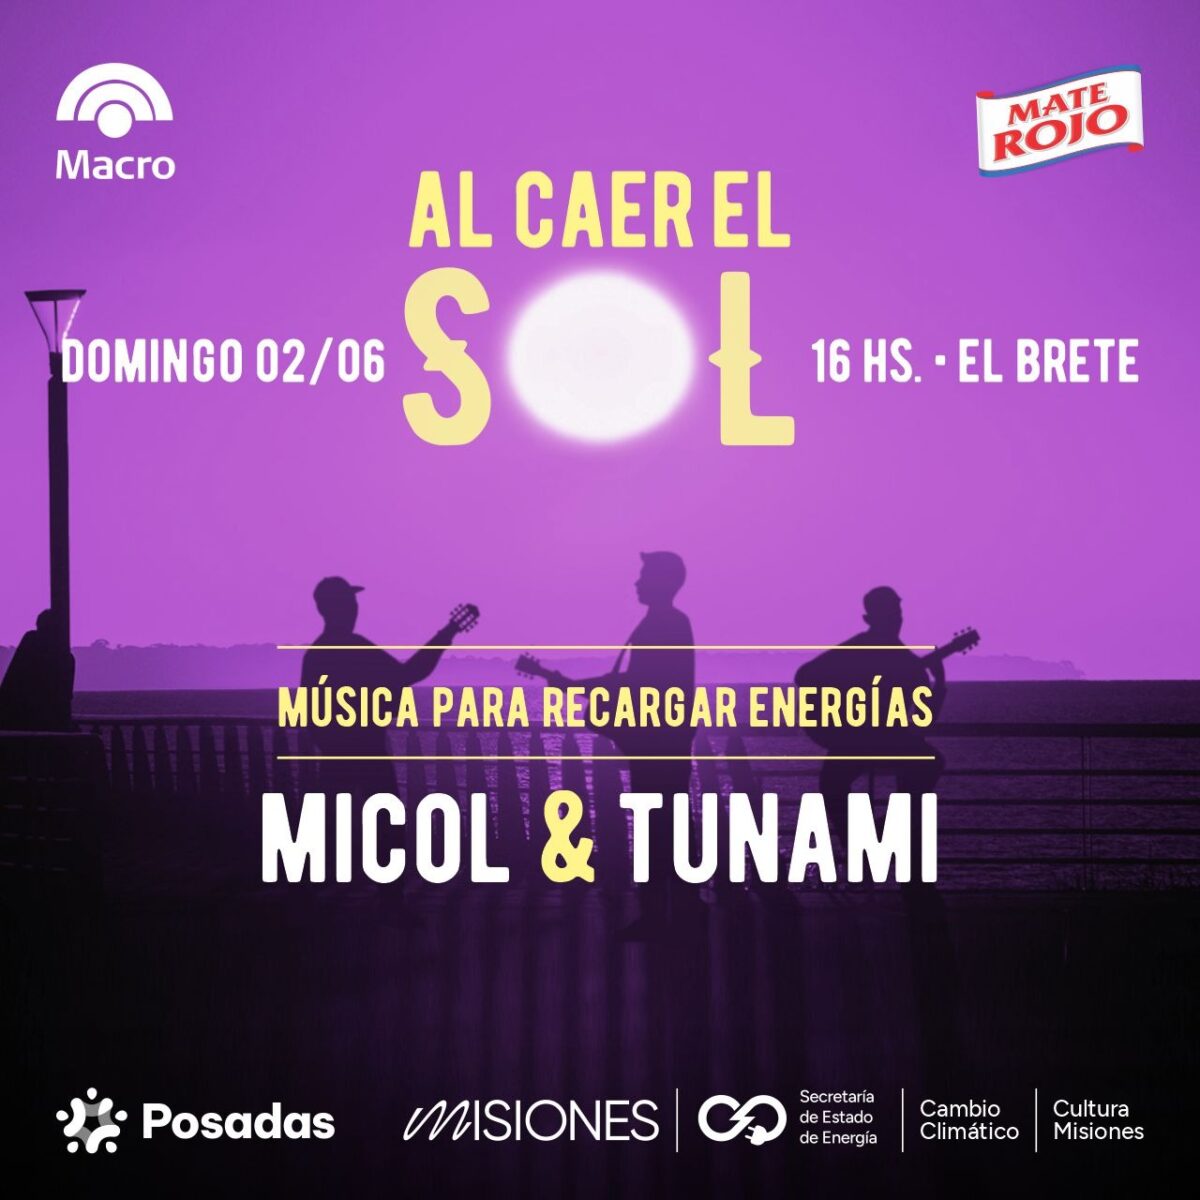 Micol y Tunami se suben al escenario de “Al caer el sol” en Playa El Brete